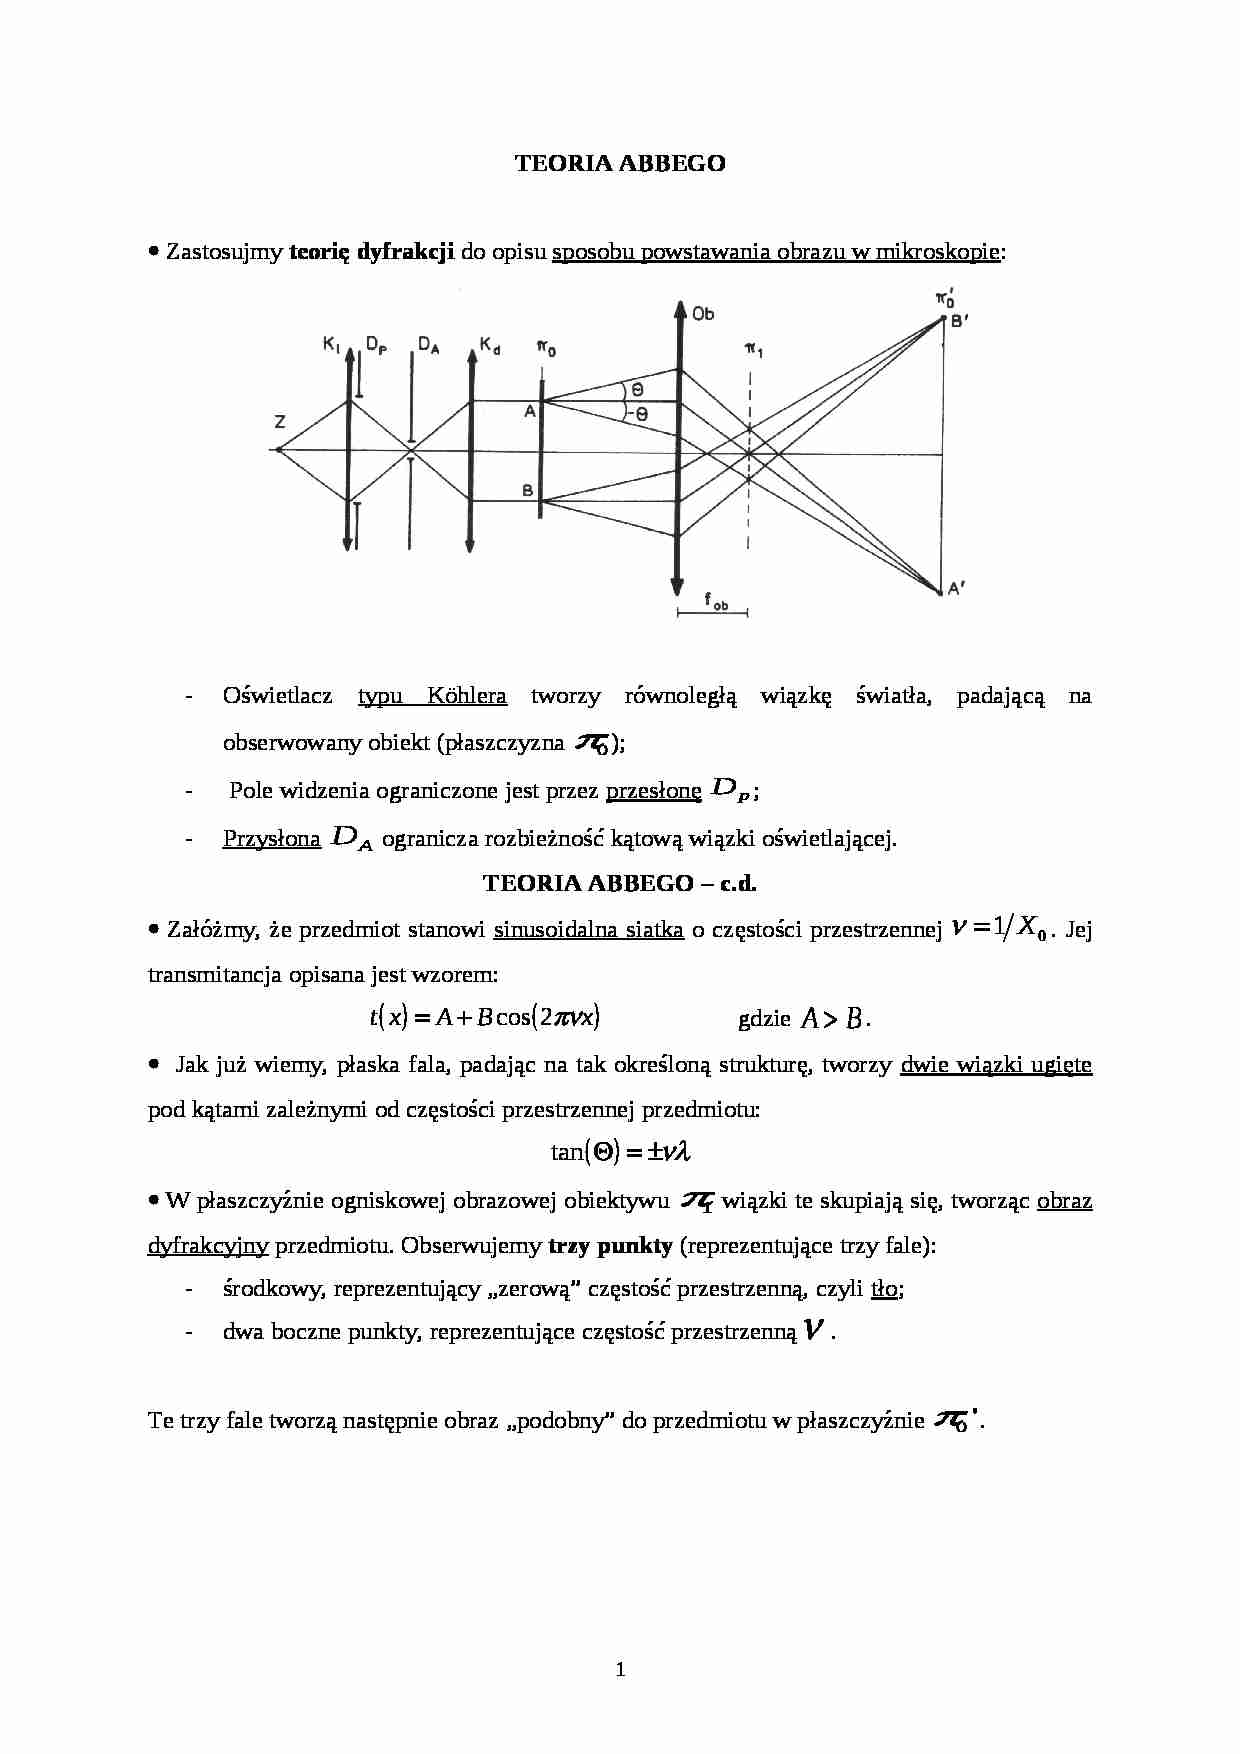 Teoria Abbego-opracowanie - strona 1